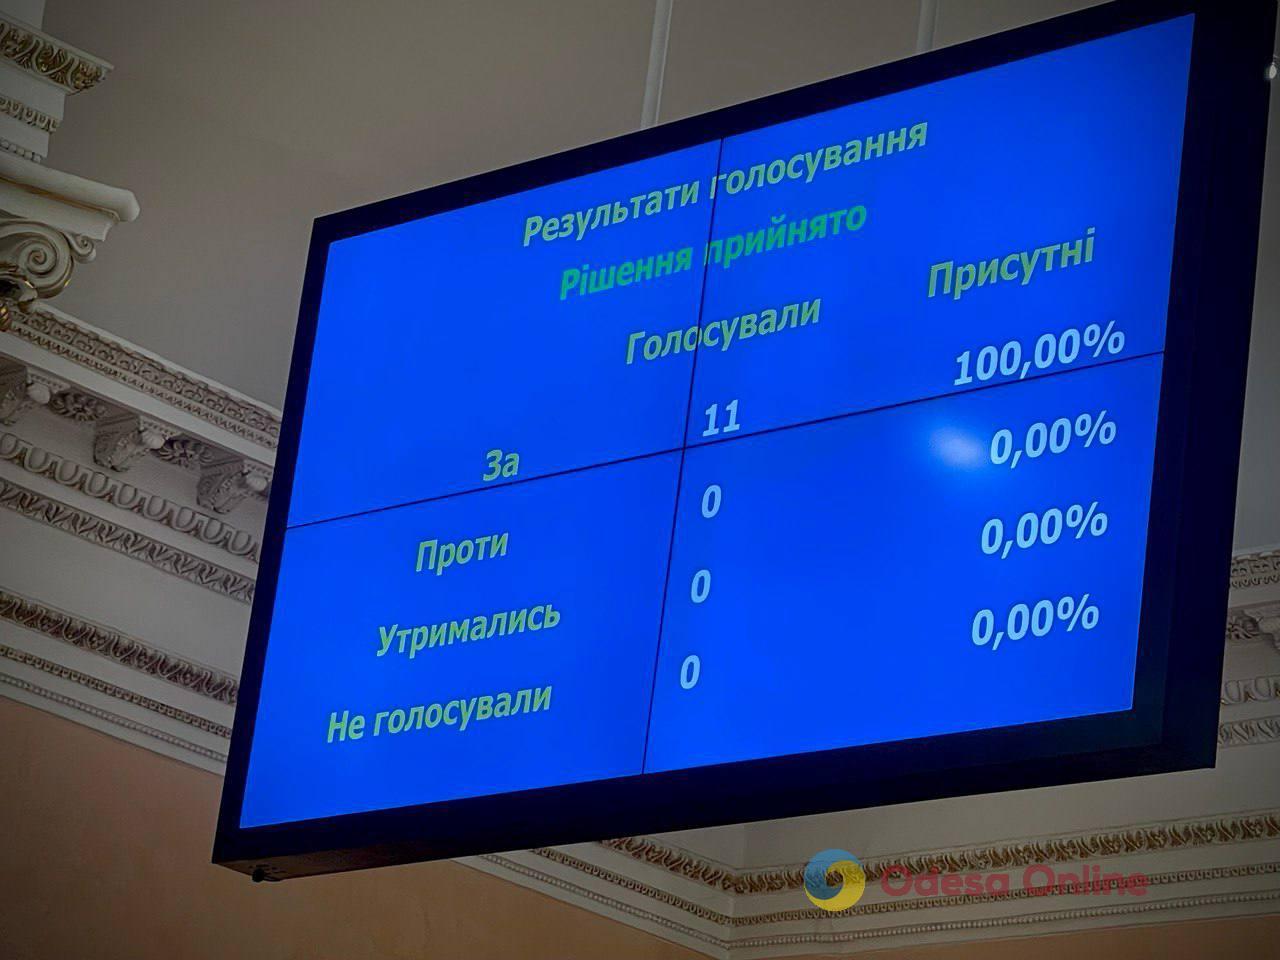 Одесса планирует закупить 30 электробусов – исполком утвердил заключение о целесообразности привлечения субкредита